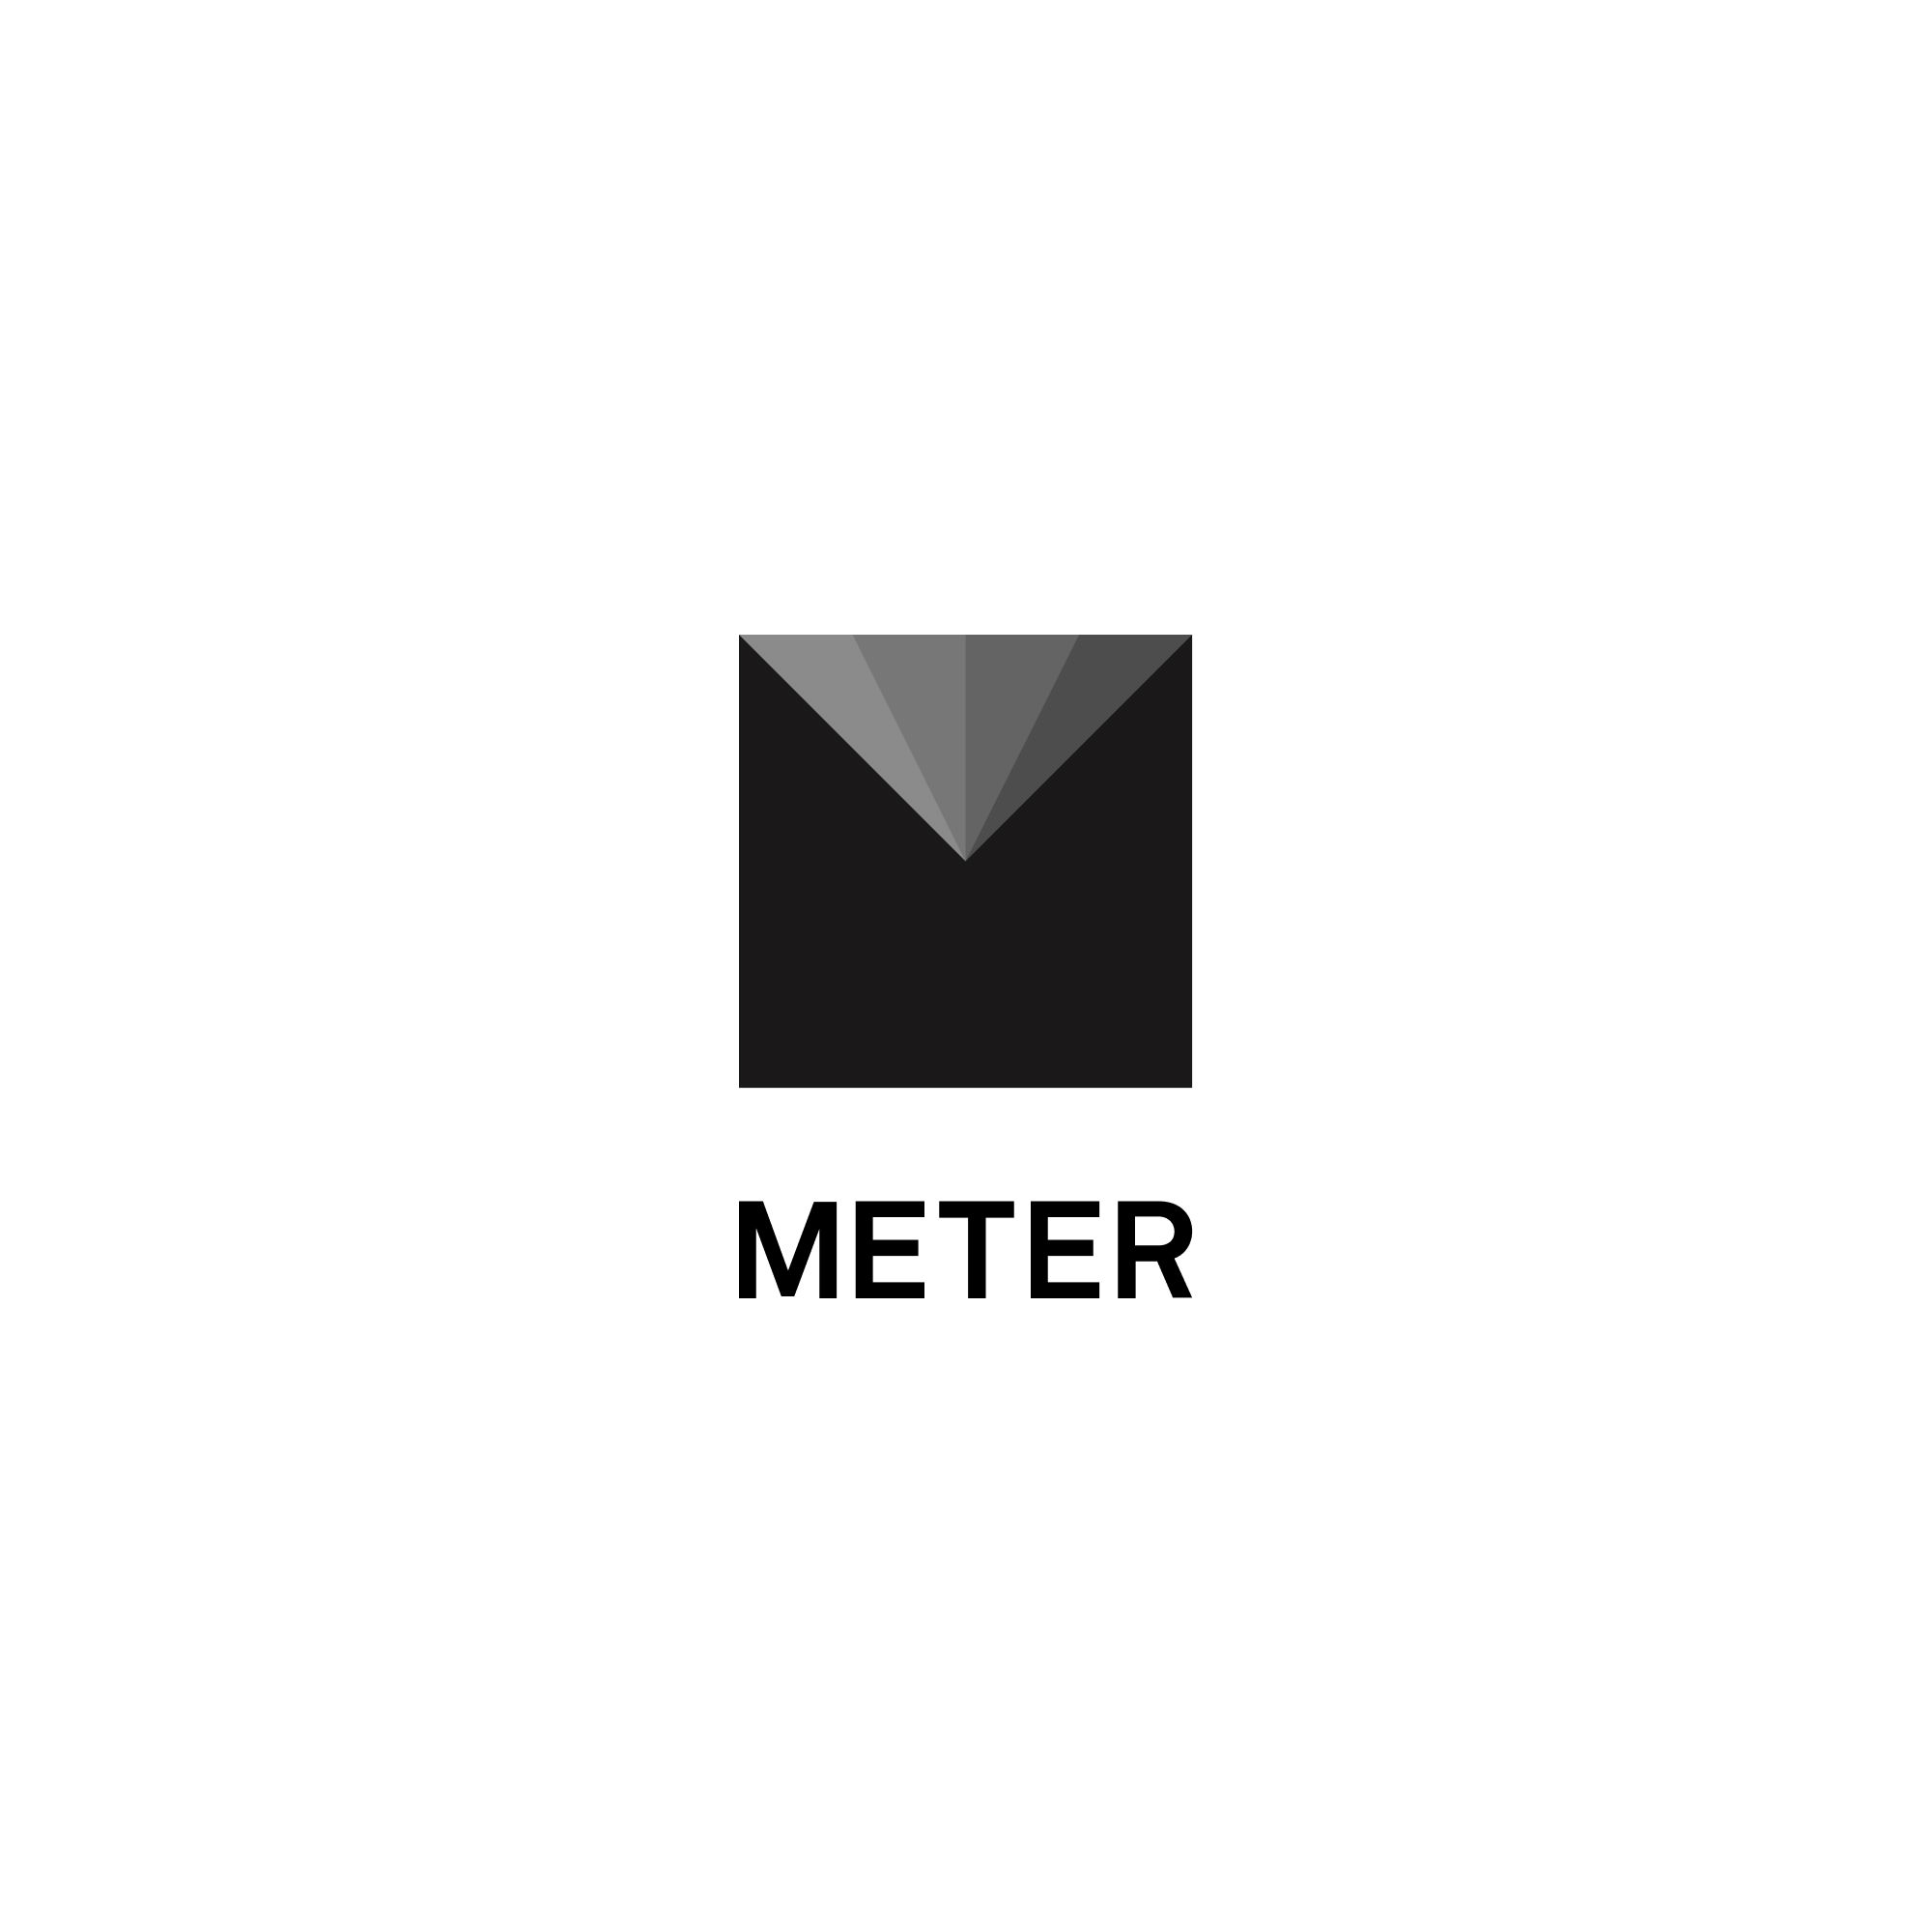 METER Group Logo